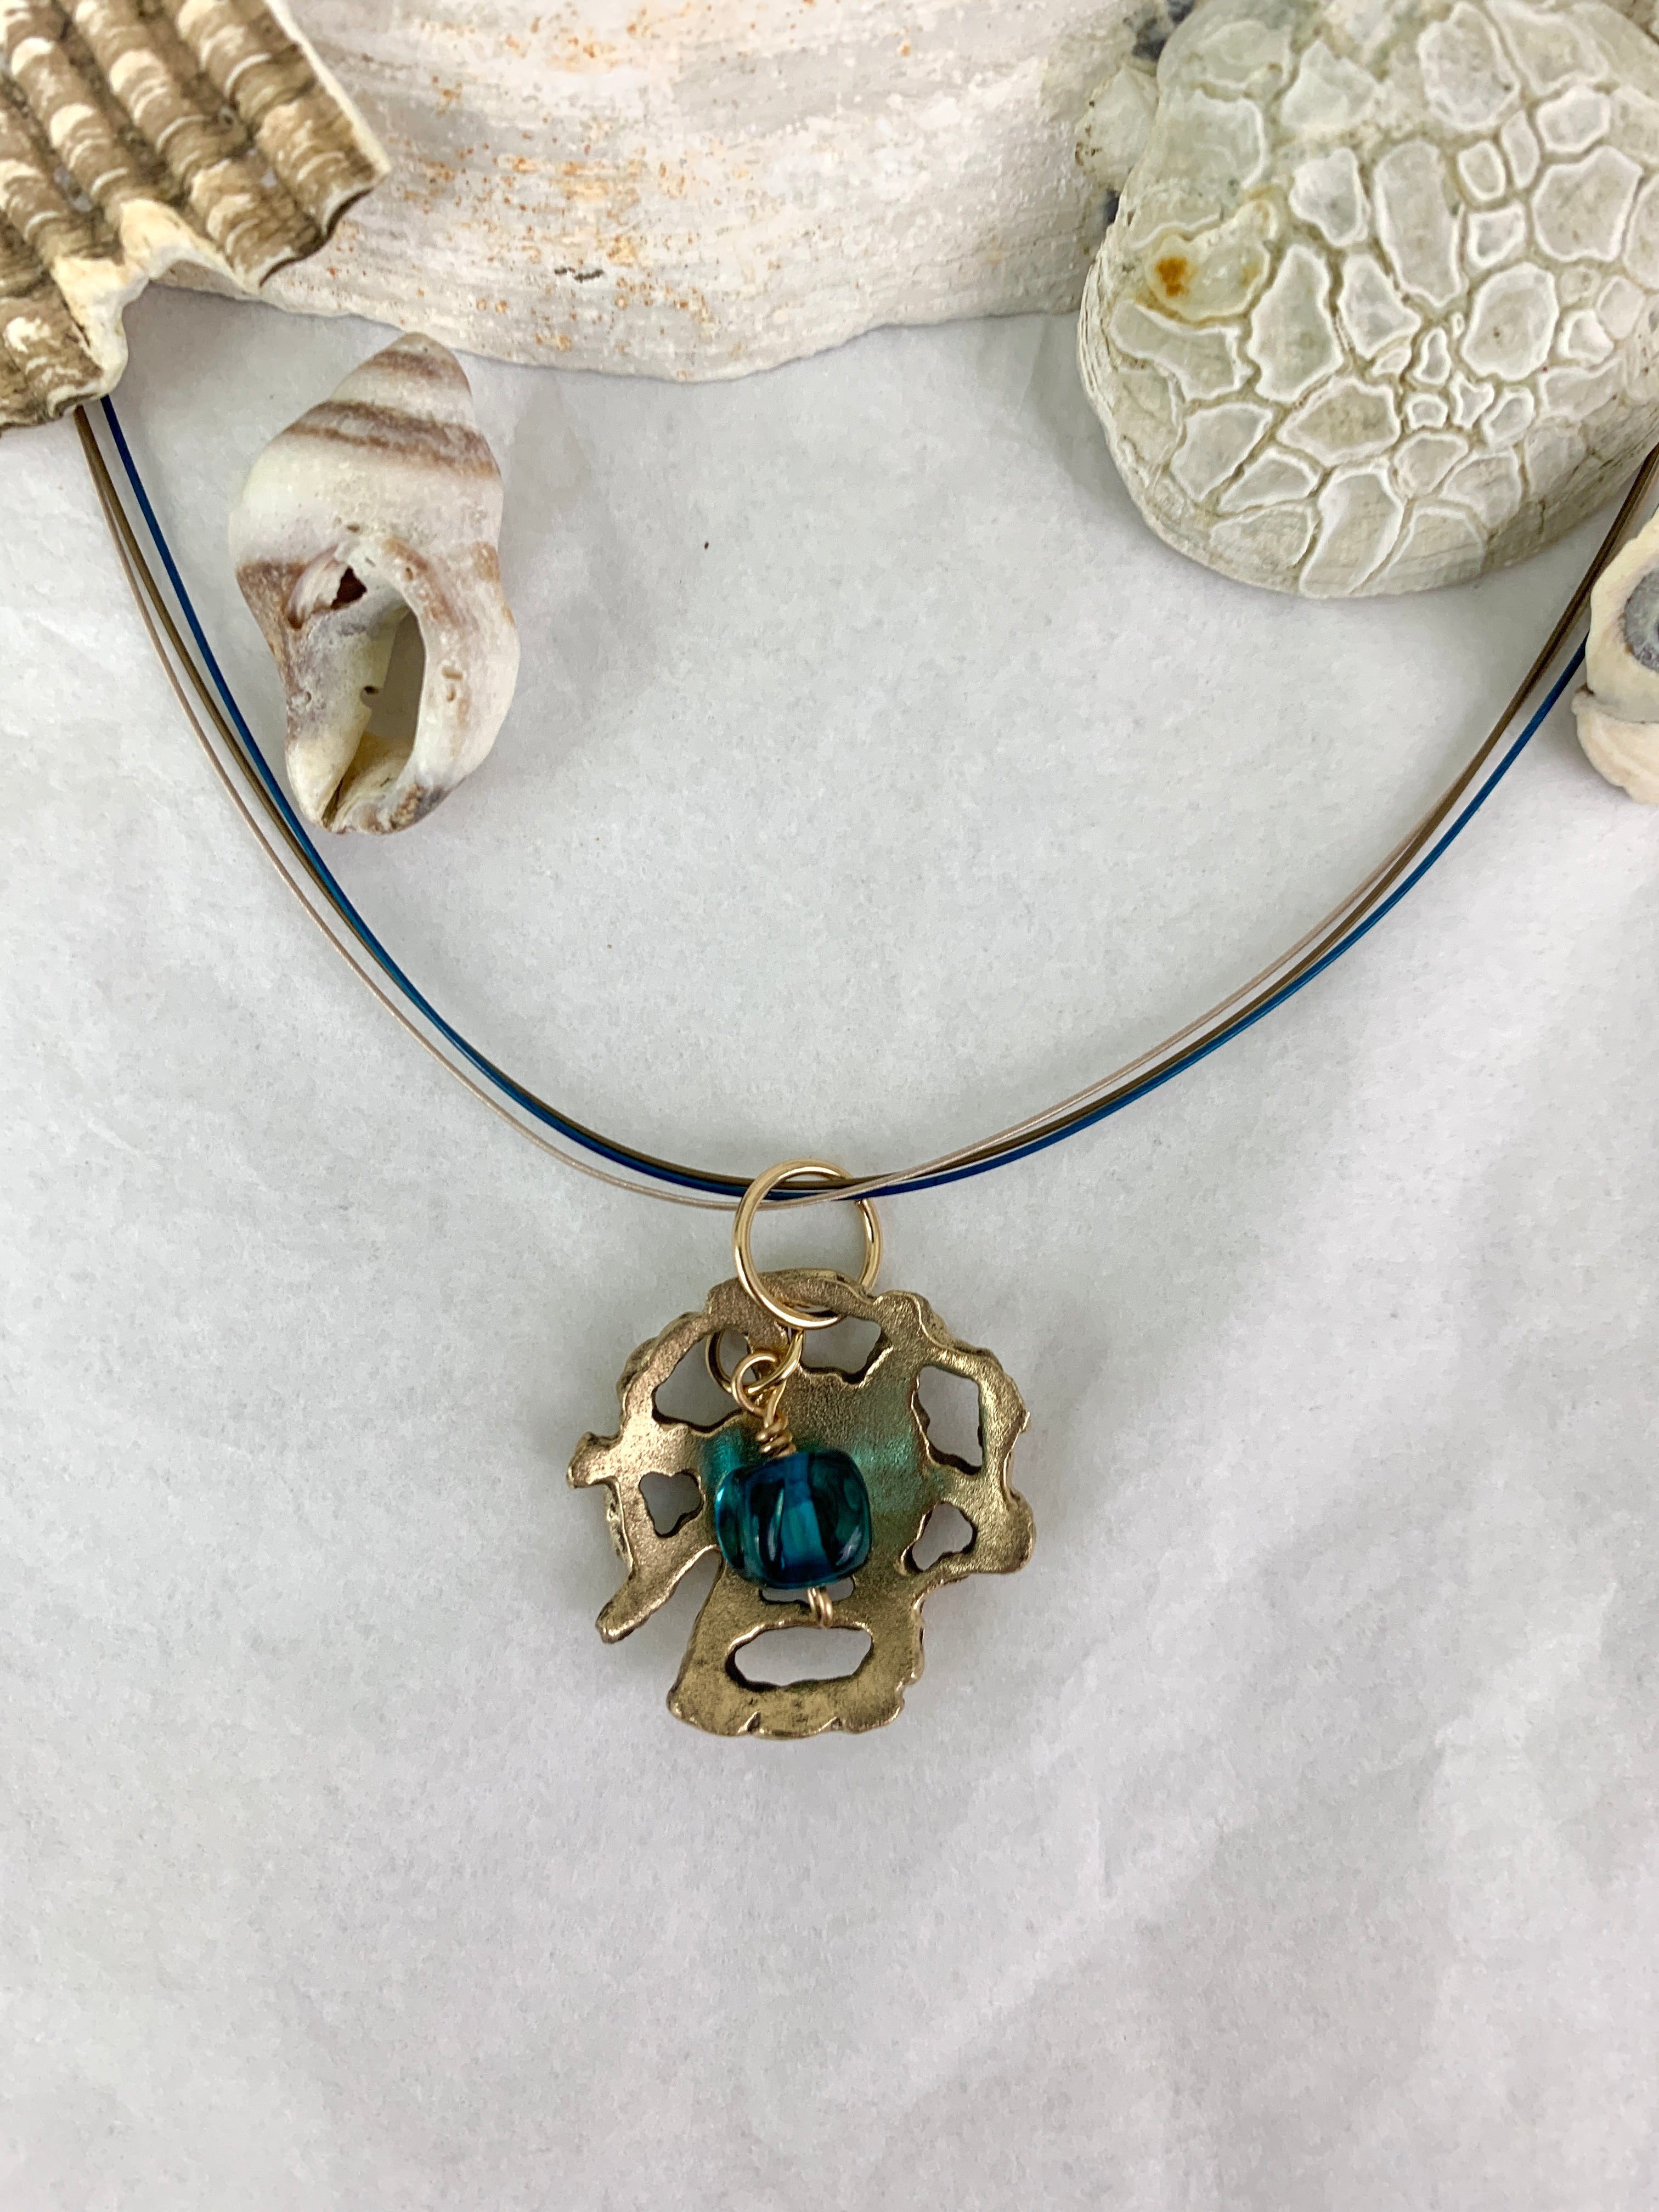 Ocean inspired bronze jewelry